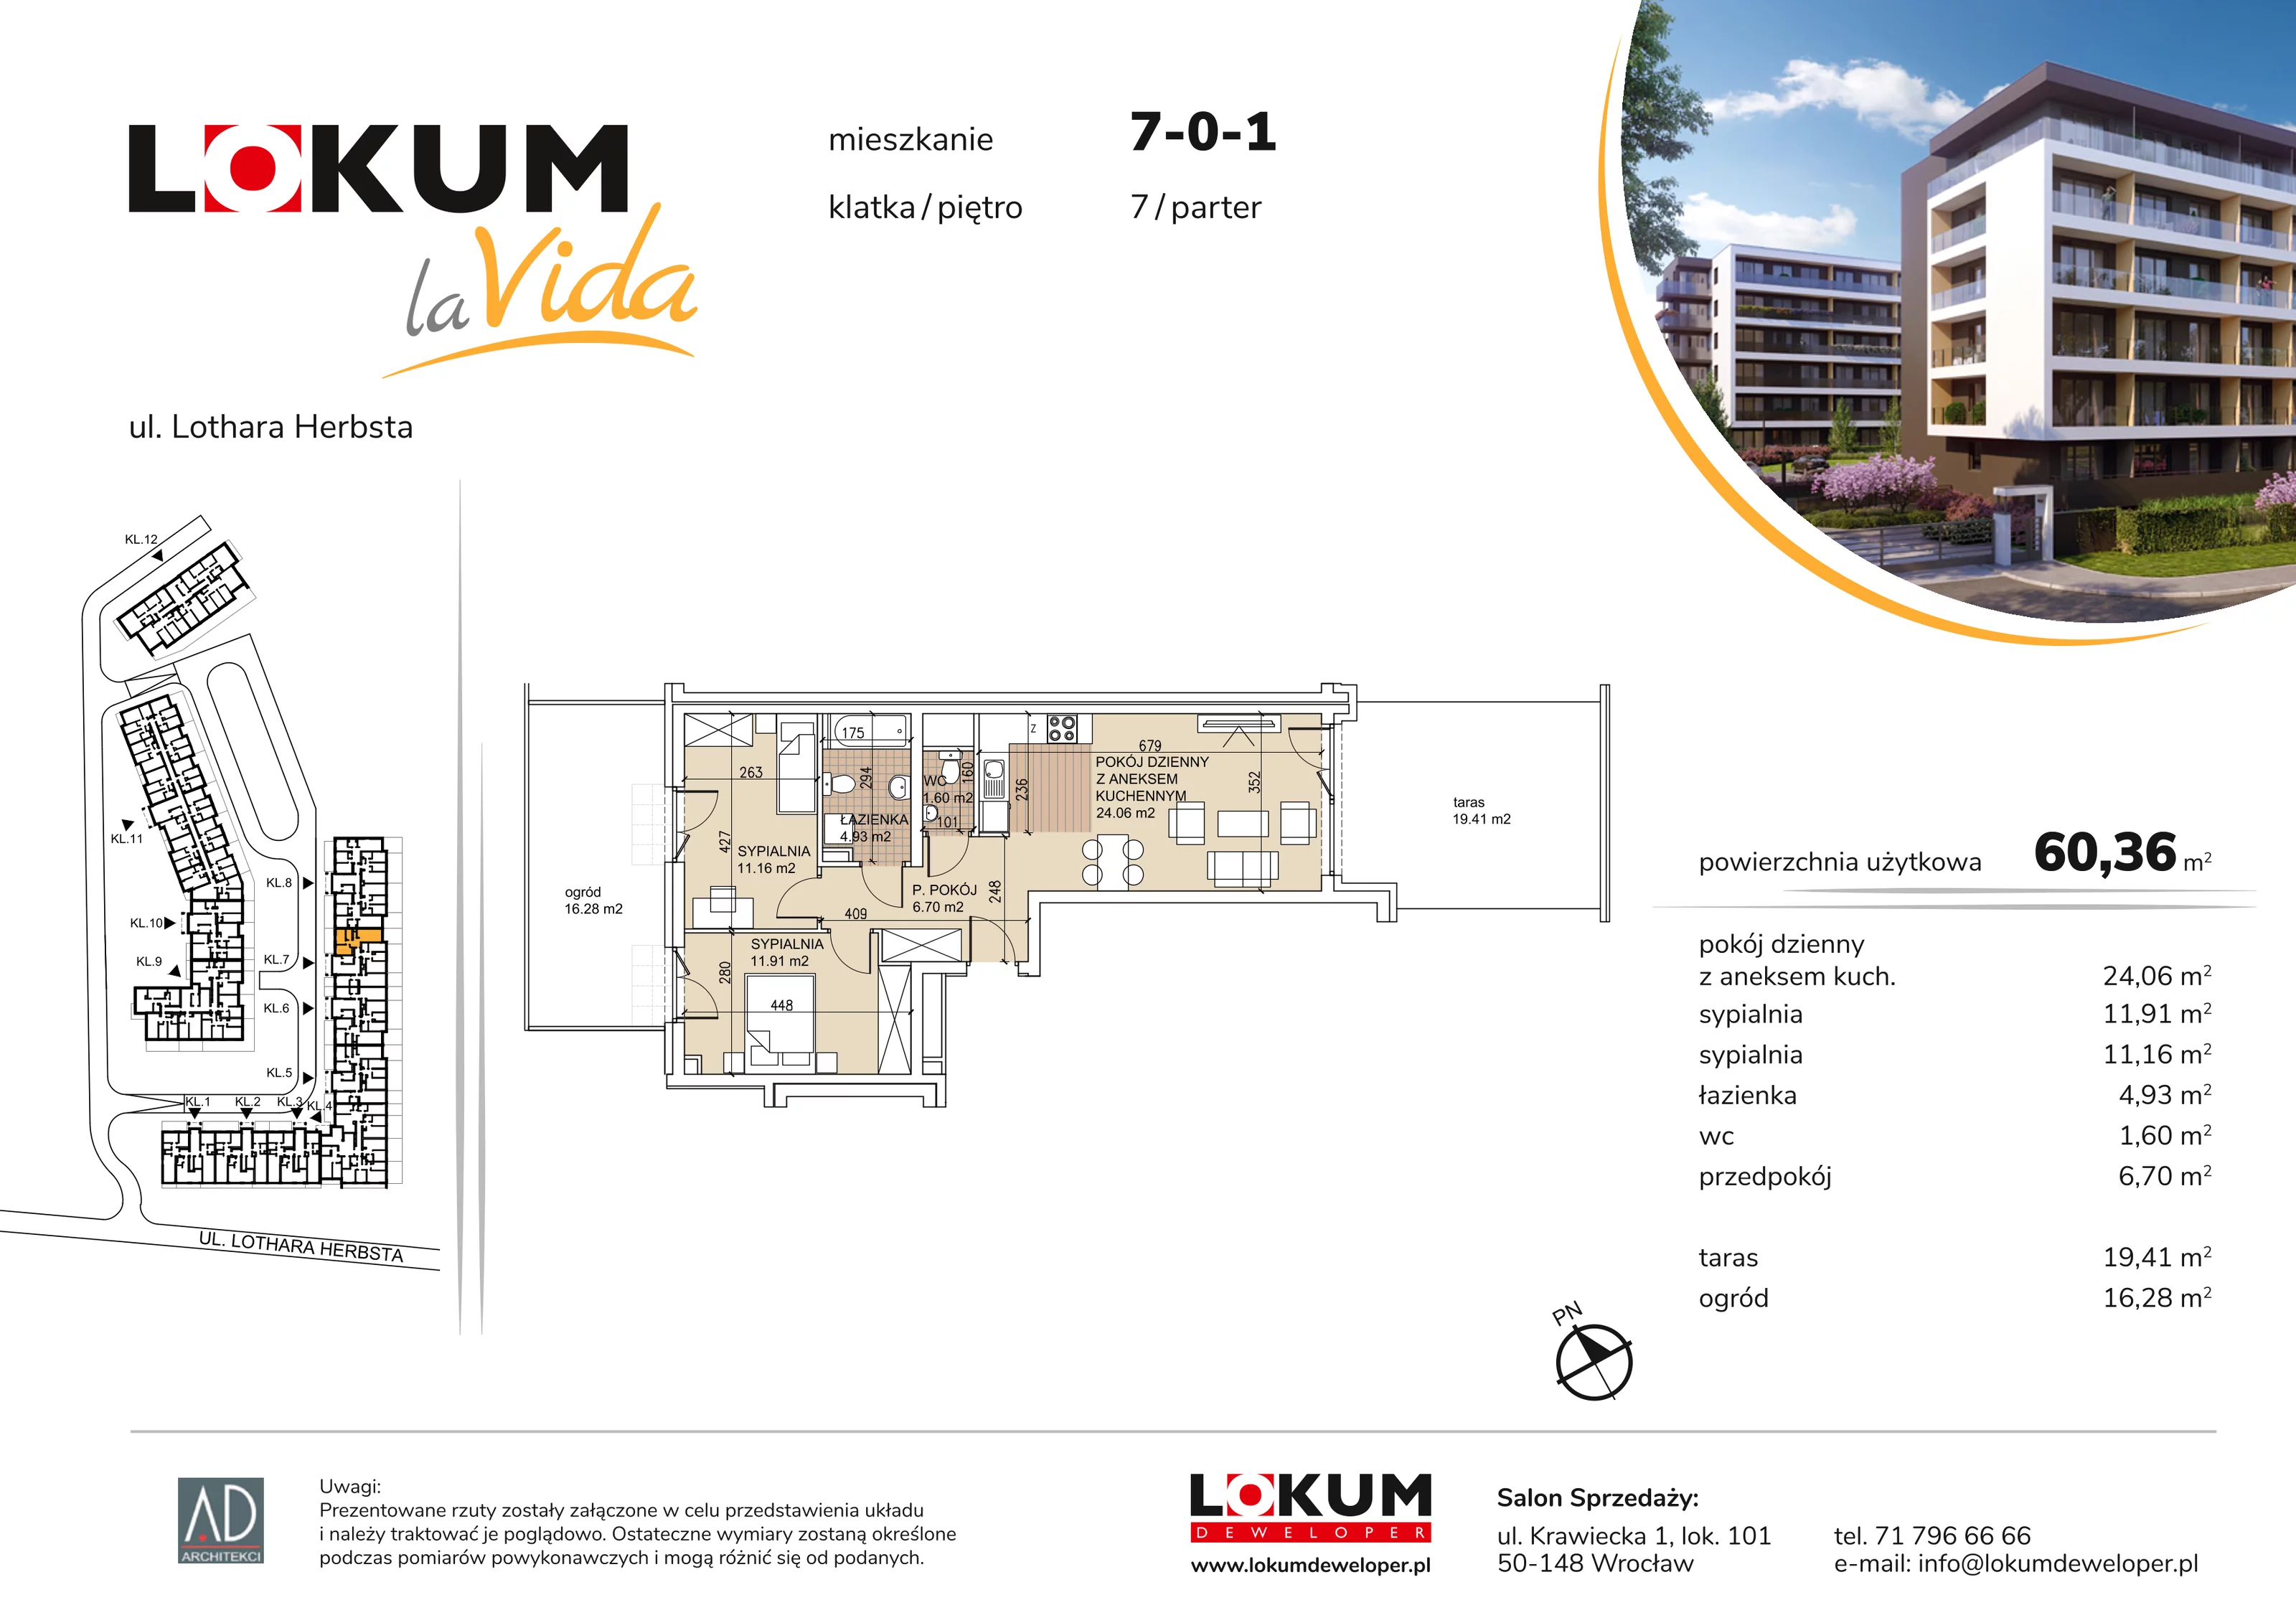 Mieszkanie 60,36 m², parter, oferta nr 7-0-1, Lokum la Vida, Wrocław, Sołtysowice, ul. Lothara Herbsta